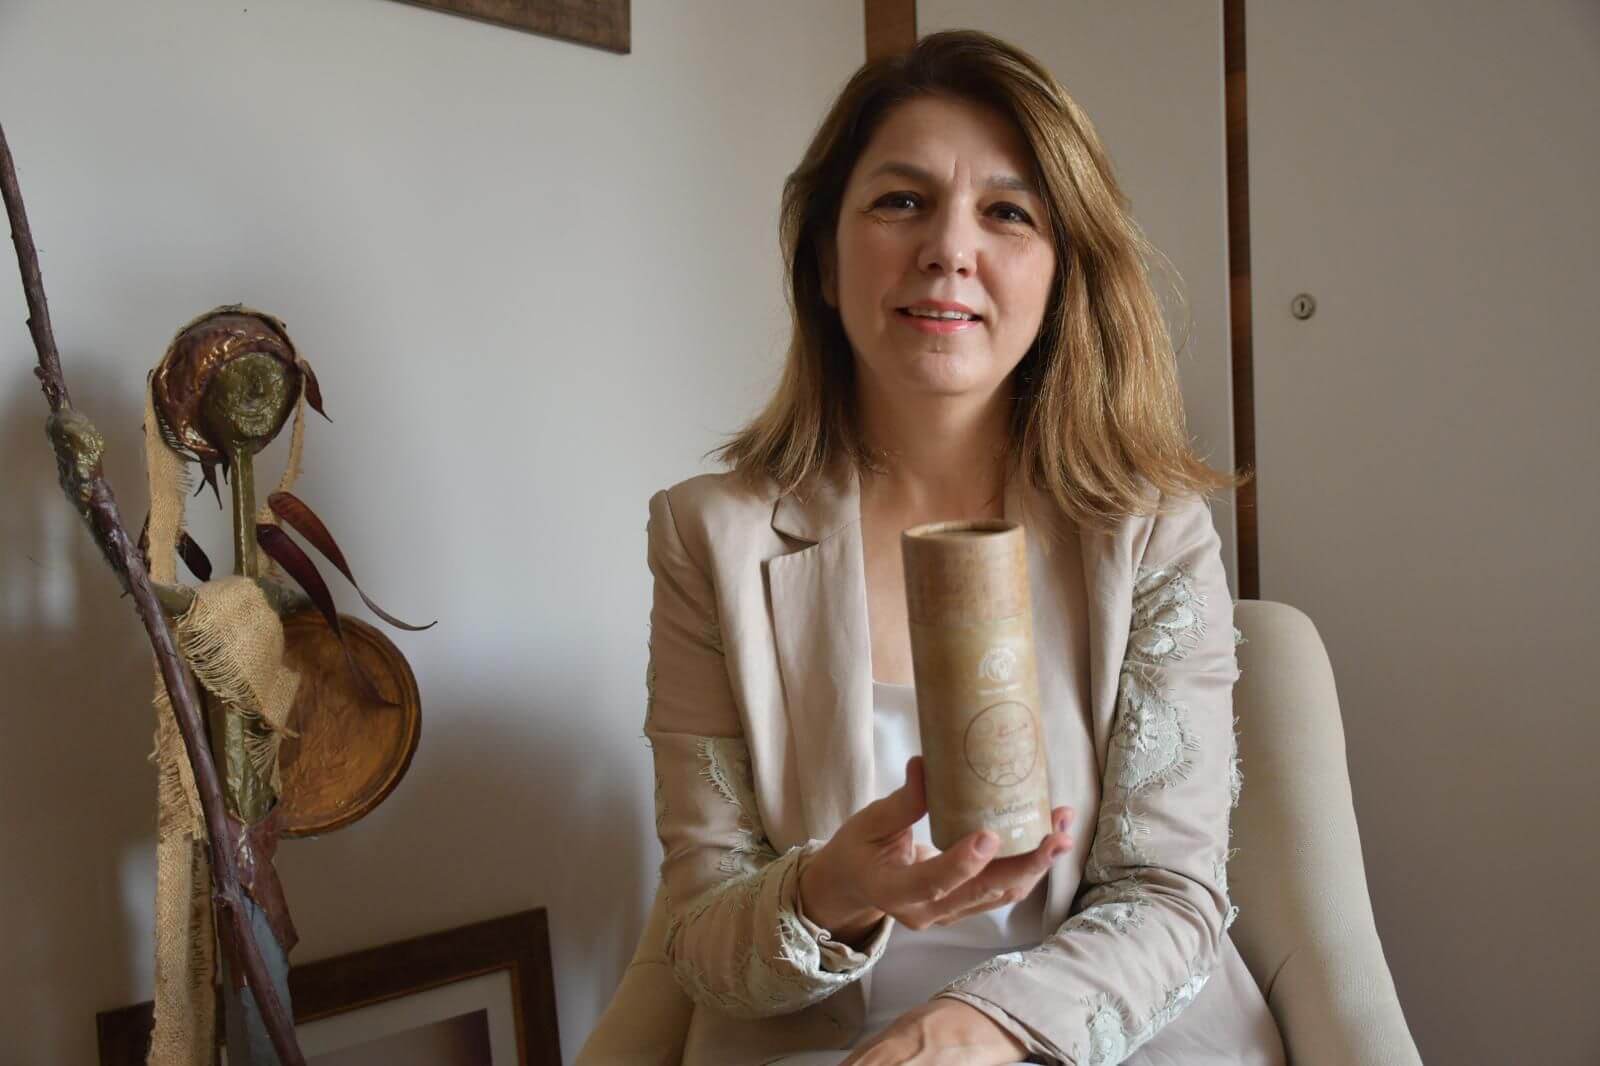 Adanalı kadın girişimci 1500 yıllık kitaptan esinlendi, 6 ayrı koku üretti